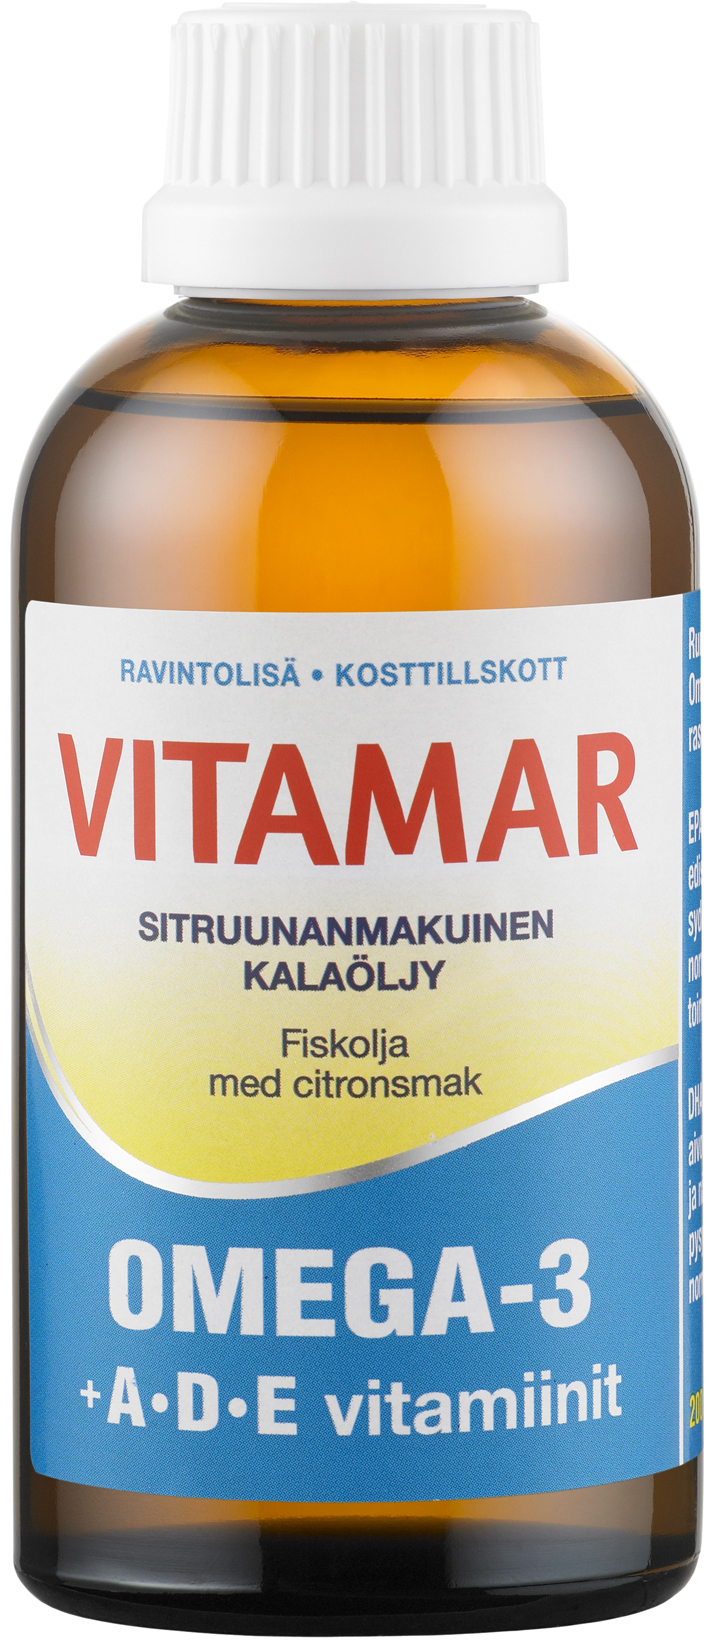 Vitamar Omega-3 ADE kalaöljy sitr.200ml